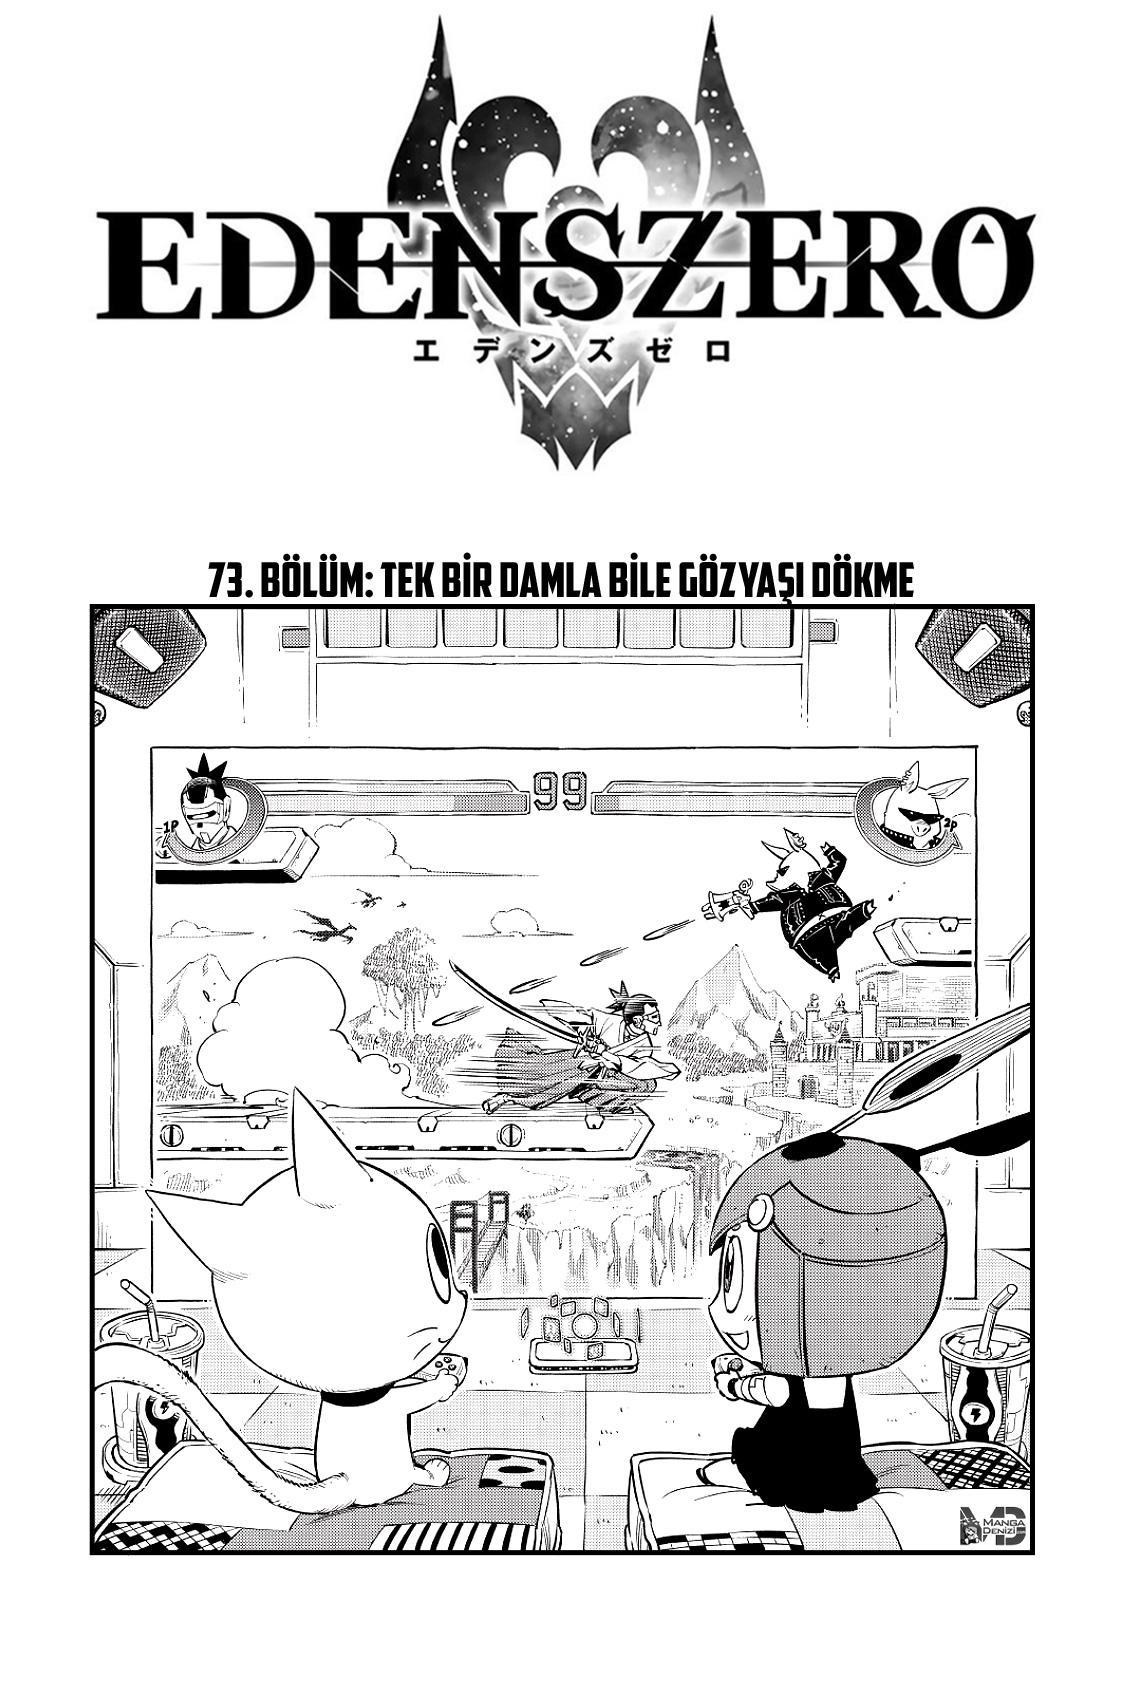 Eden's Zero mangasının 073 bölümünün 2. sayfasını okuyorsunuz.